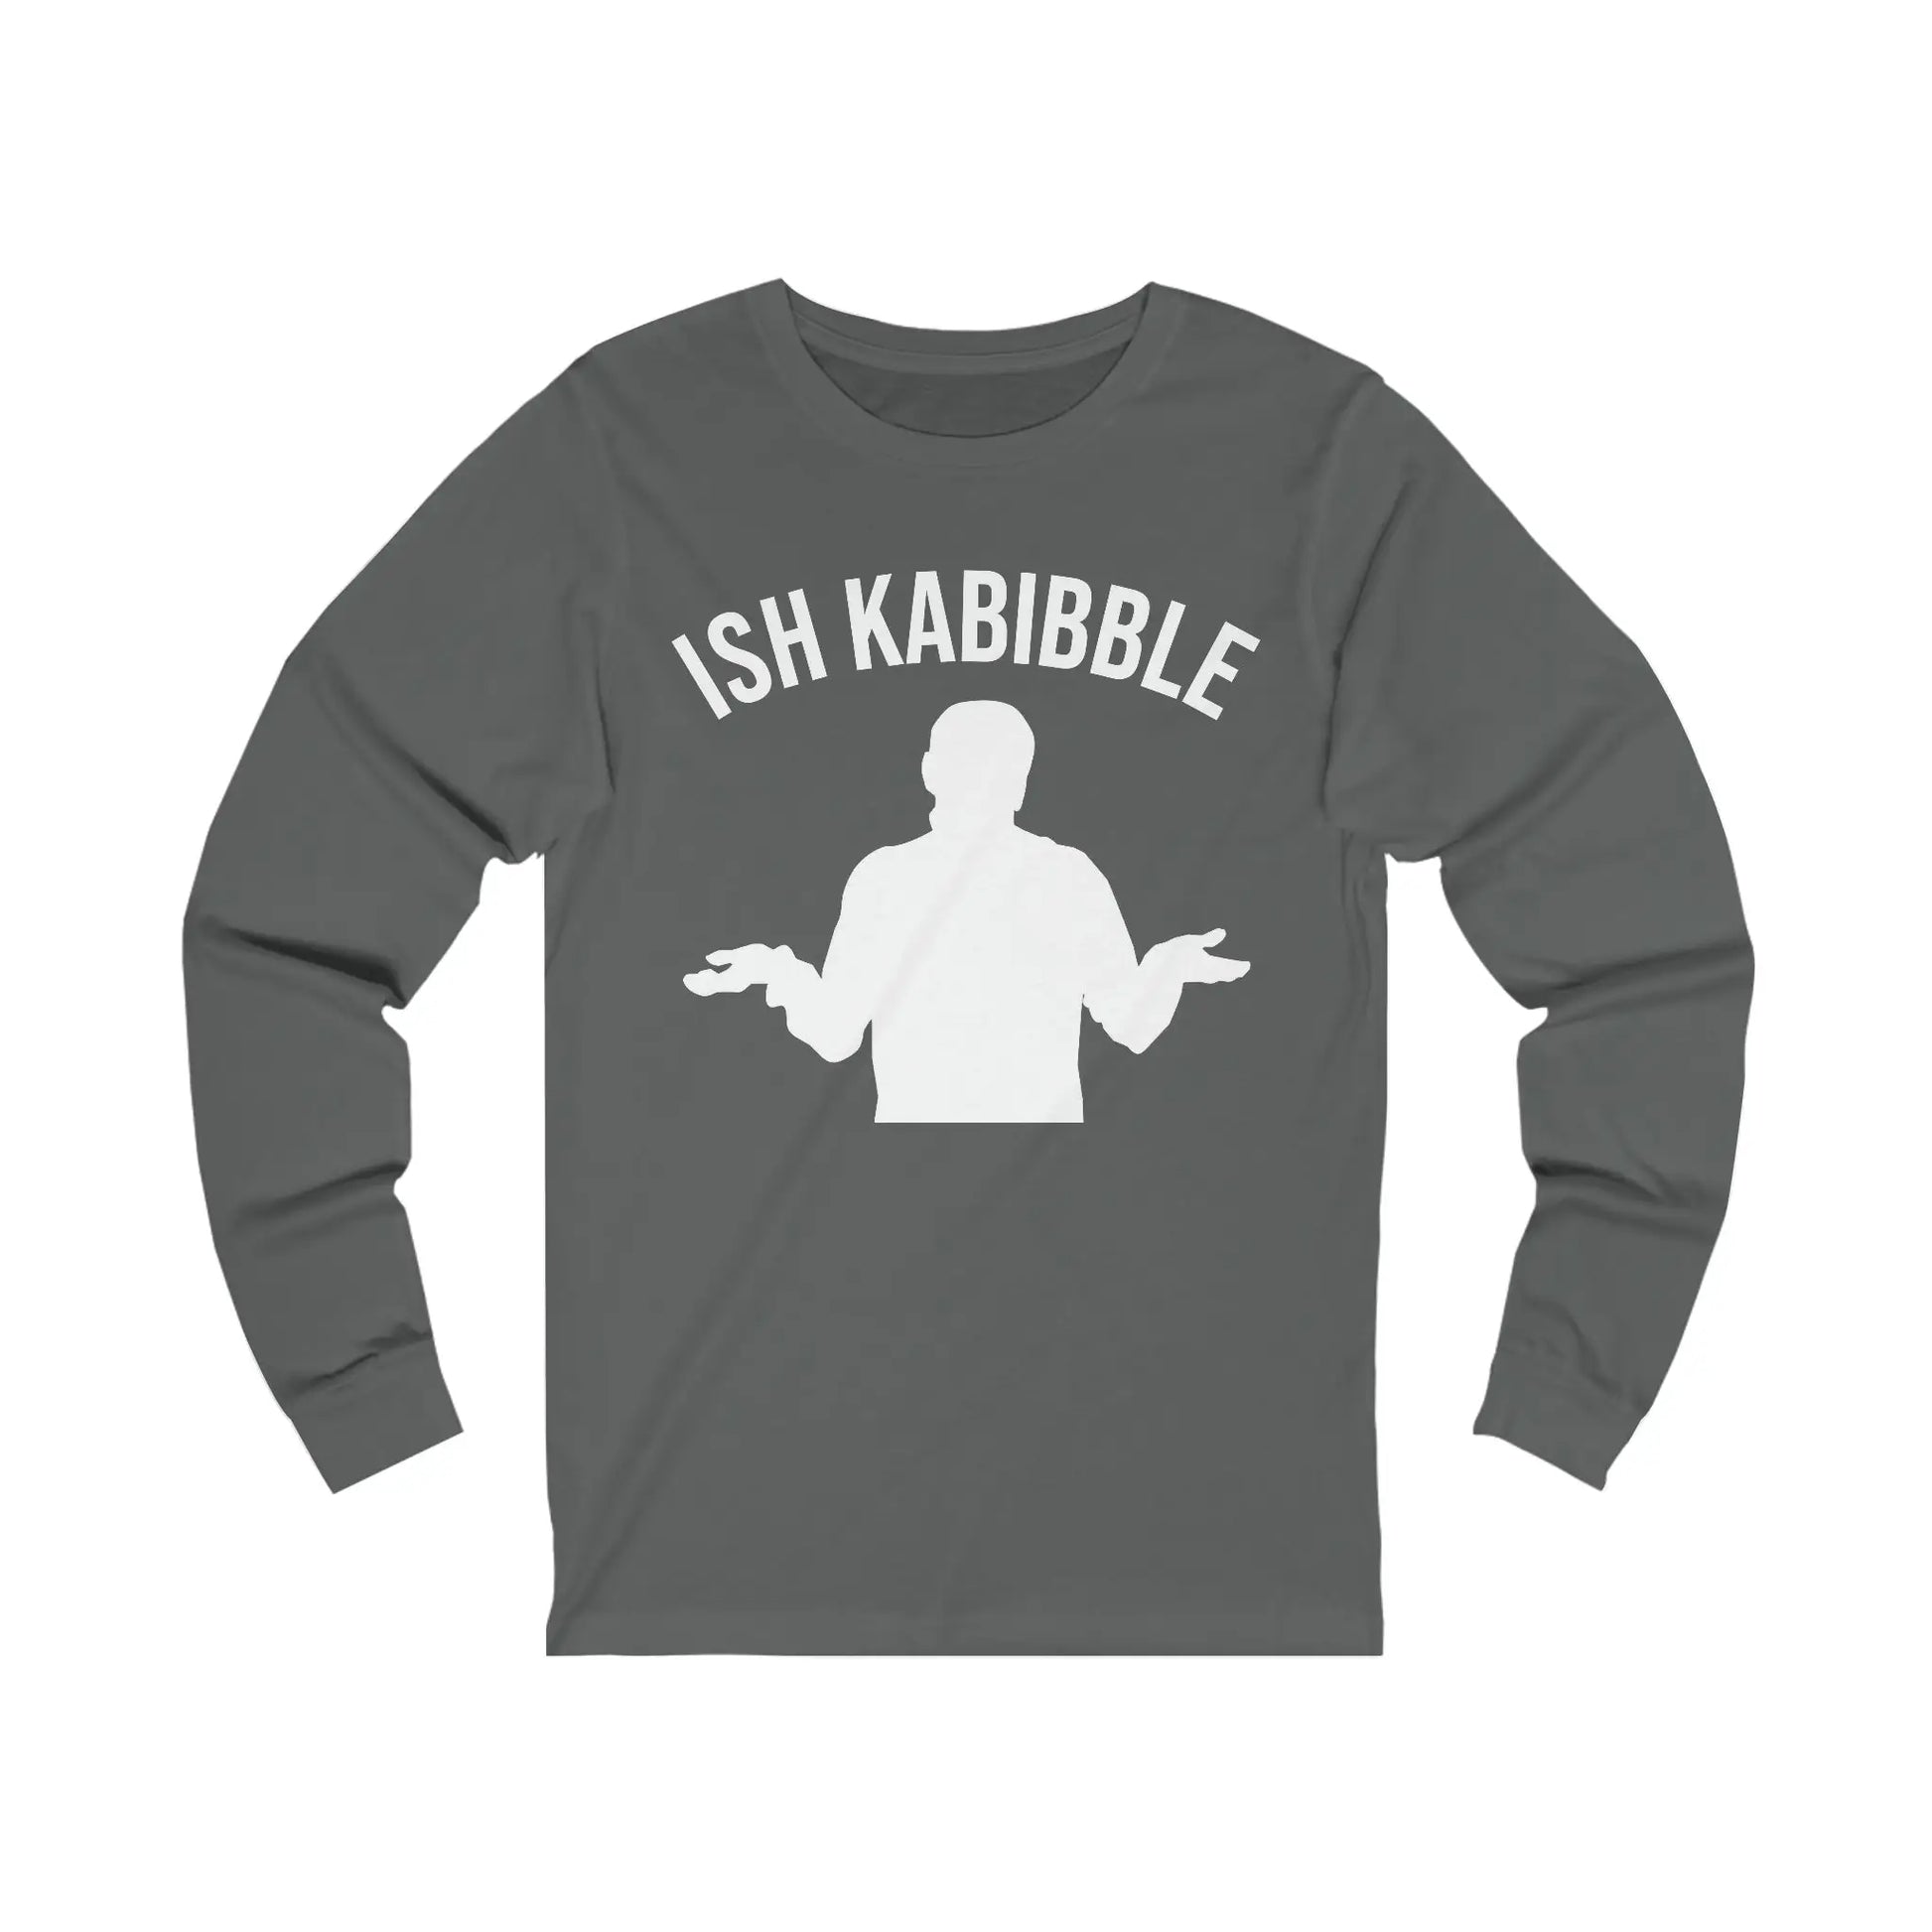 Ish Kabibble Men's Long Sleeve Tee - Wicked Tees